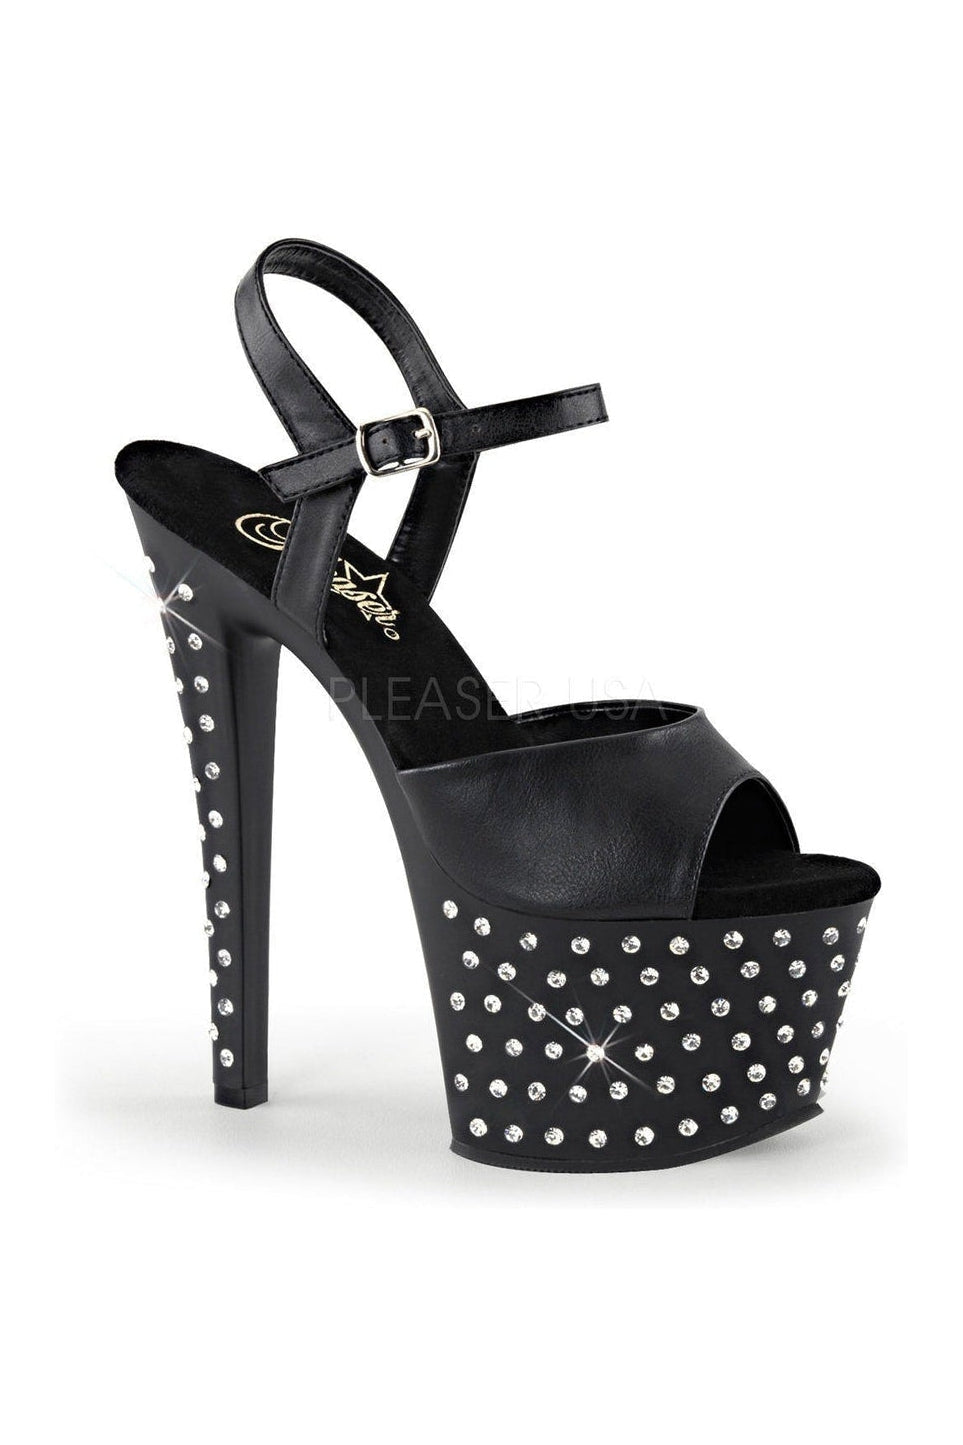 STARDUST-709 Platform Sandal | Black Faux Leather-Pleaser-Black-Sandals-SEXYSHOES.COM